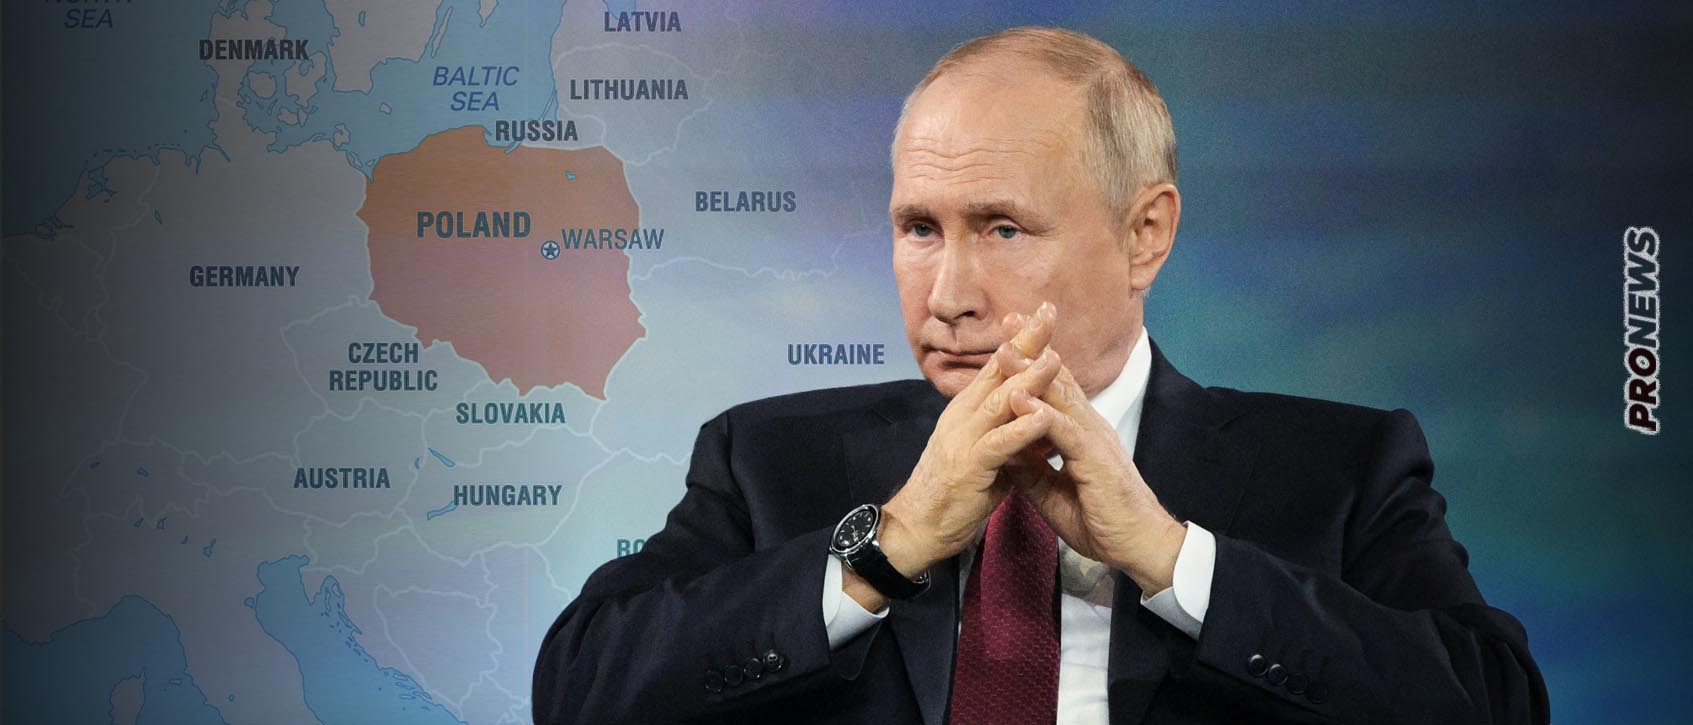 Ο Β.Πούτιν μιλά ξανά για «πολωνικά εδάφη» στην Ουκρανία: «Αν το Κίεβο αφήσει τις πολωνικές μονάδες να μπουν θα τα χάσει»